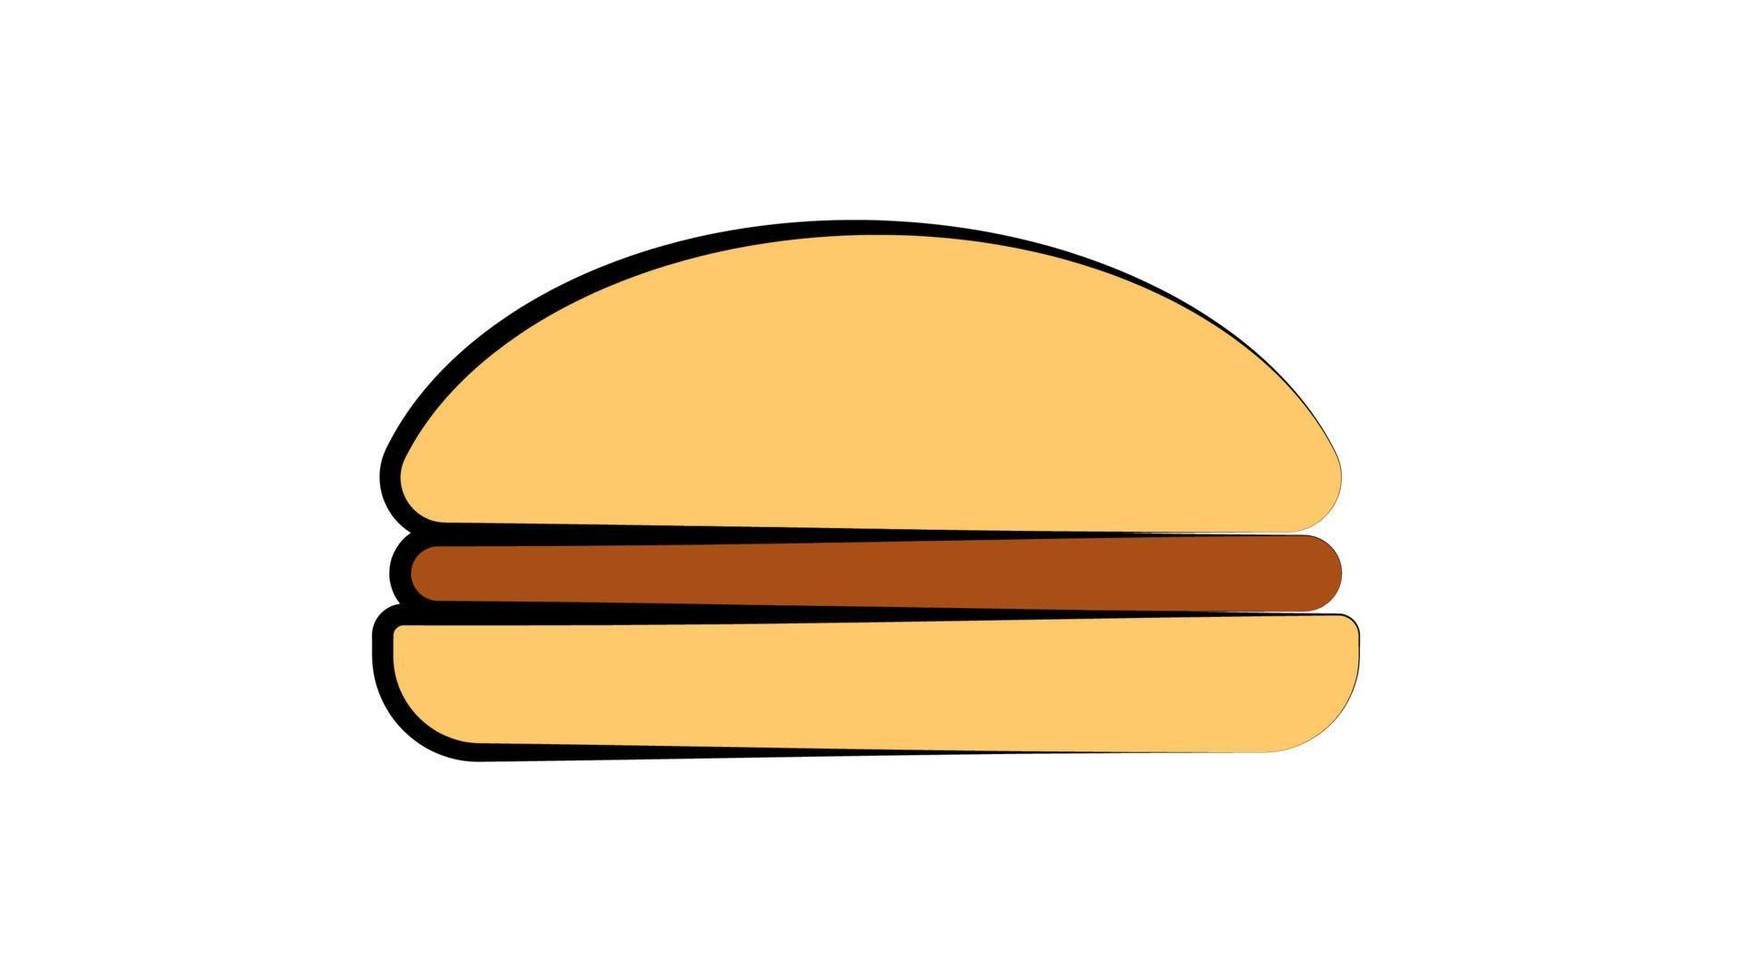 burger appétissant avec garniture sur fond blanc, illustration vectorielle. burger végétarien, sans viande ni fromage, avec salade et herbe. petit pain diététique appétissant vecteur